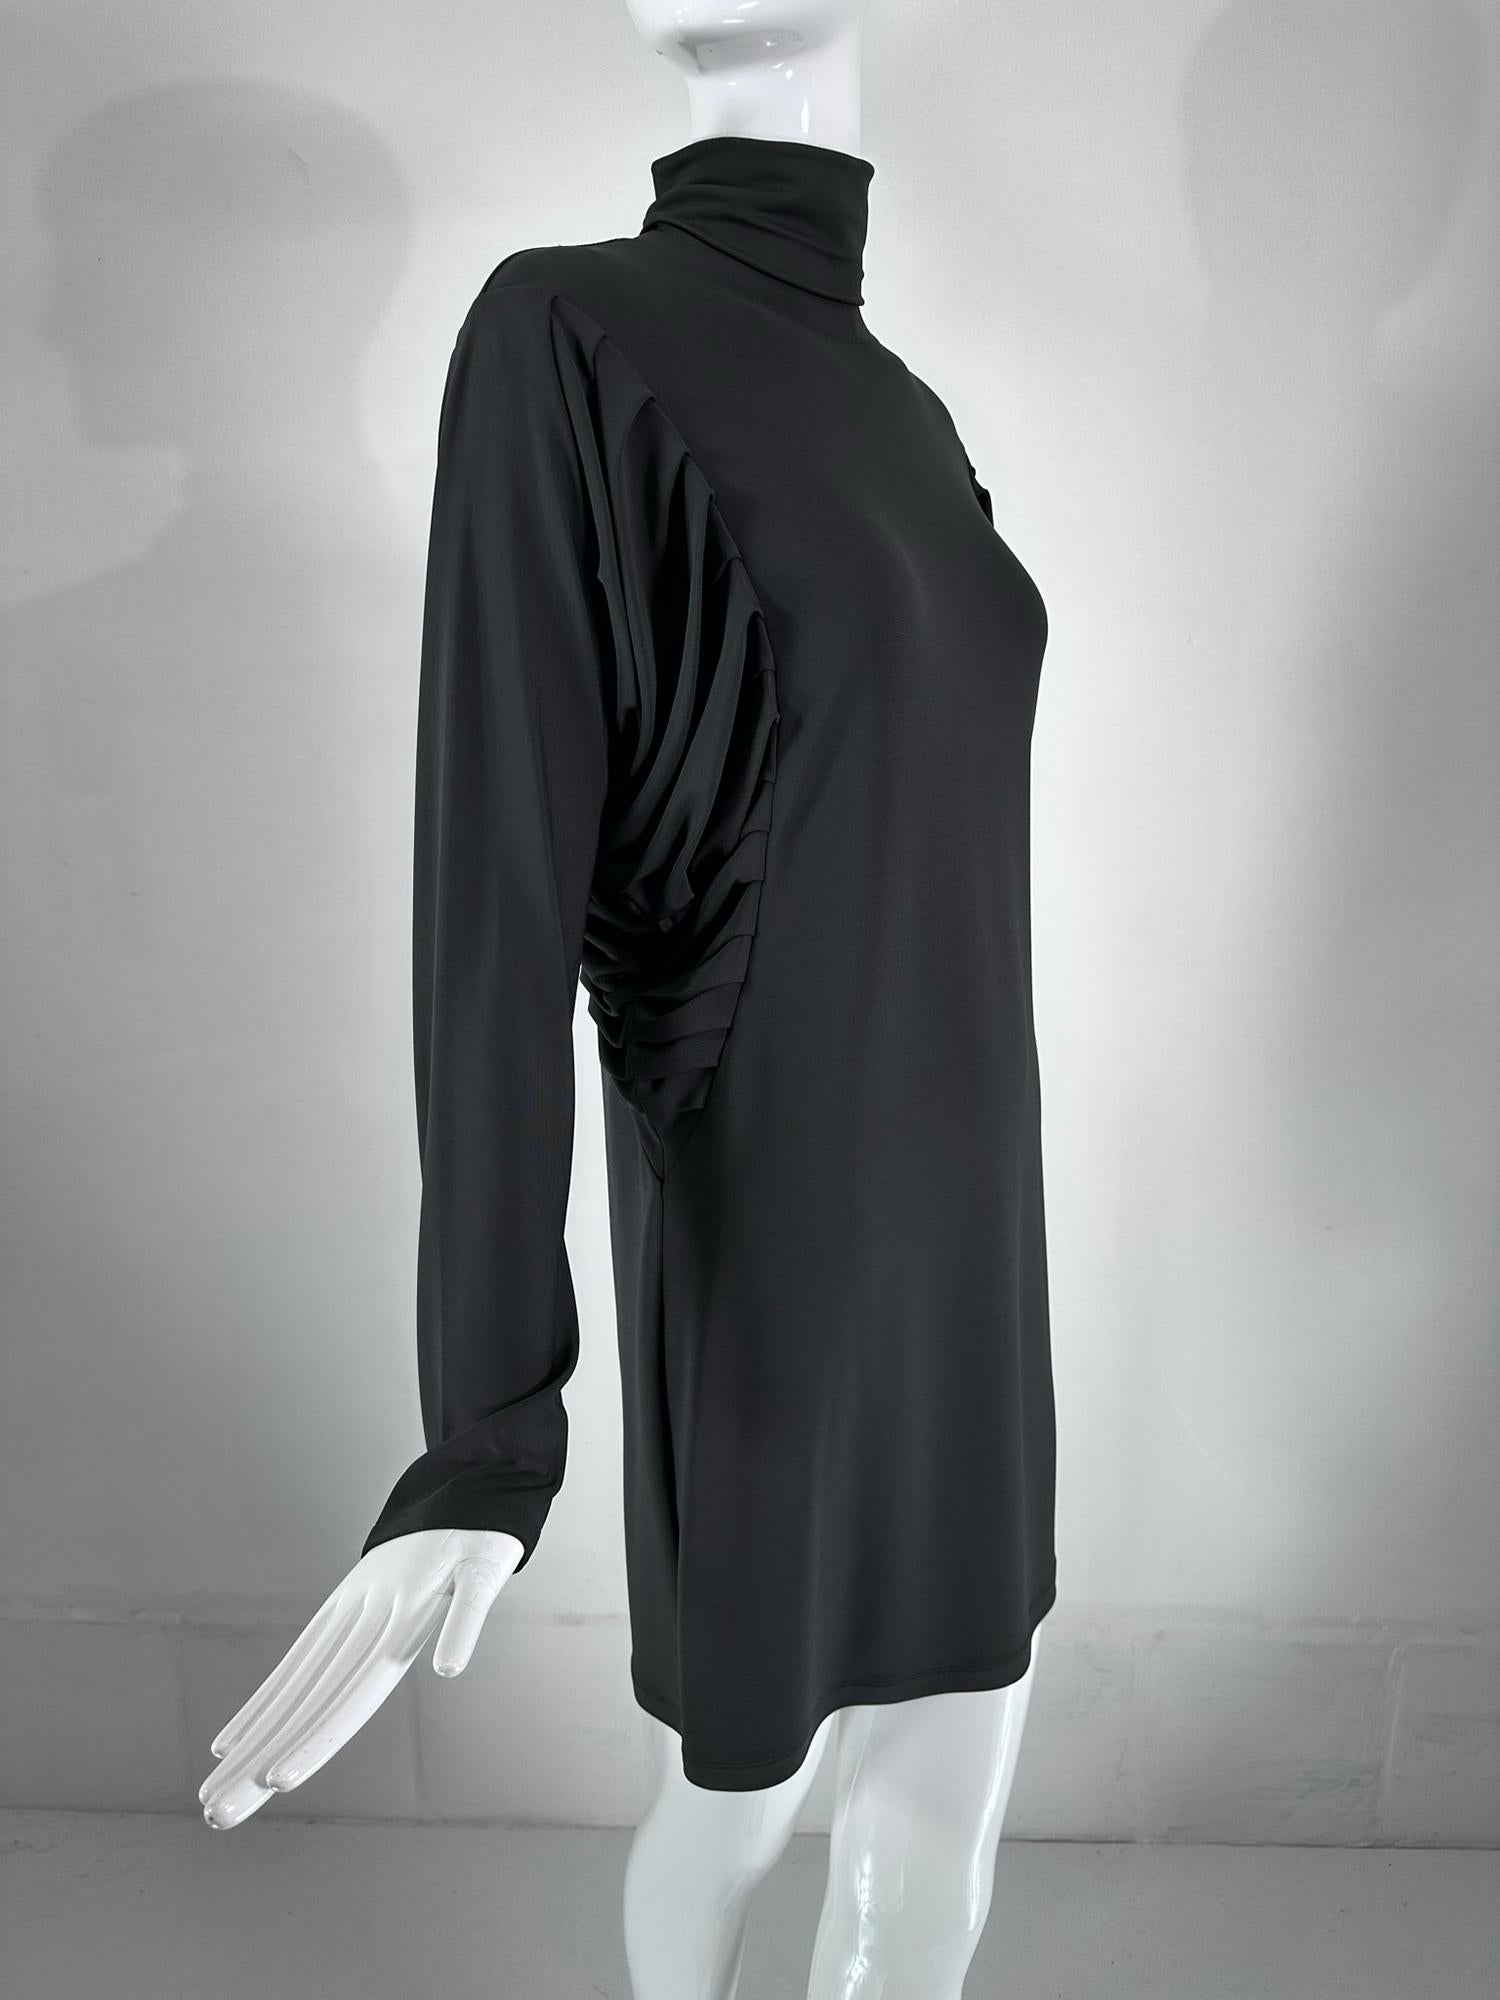 Fendi Silky Black Jersey Pleated Bat Wing Turtle Neck Dress 40 For Sale 1